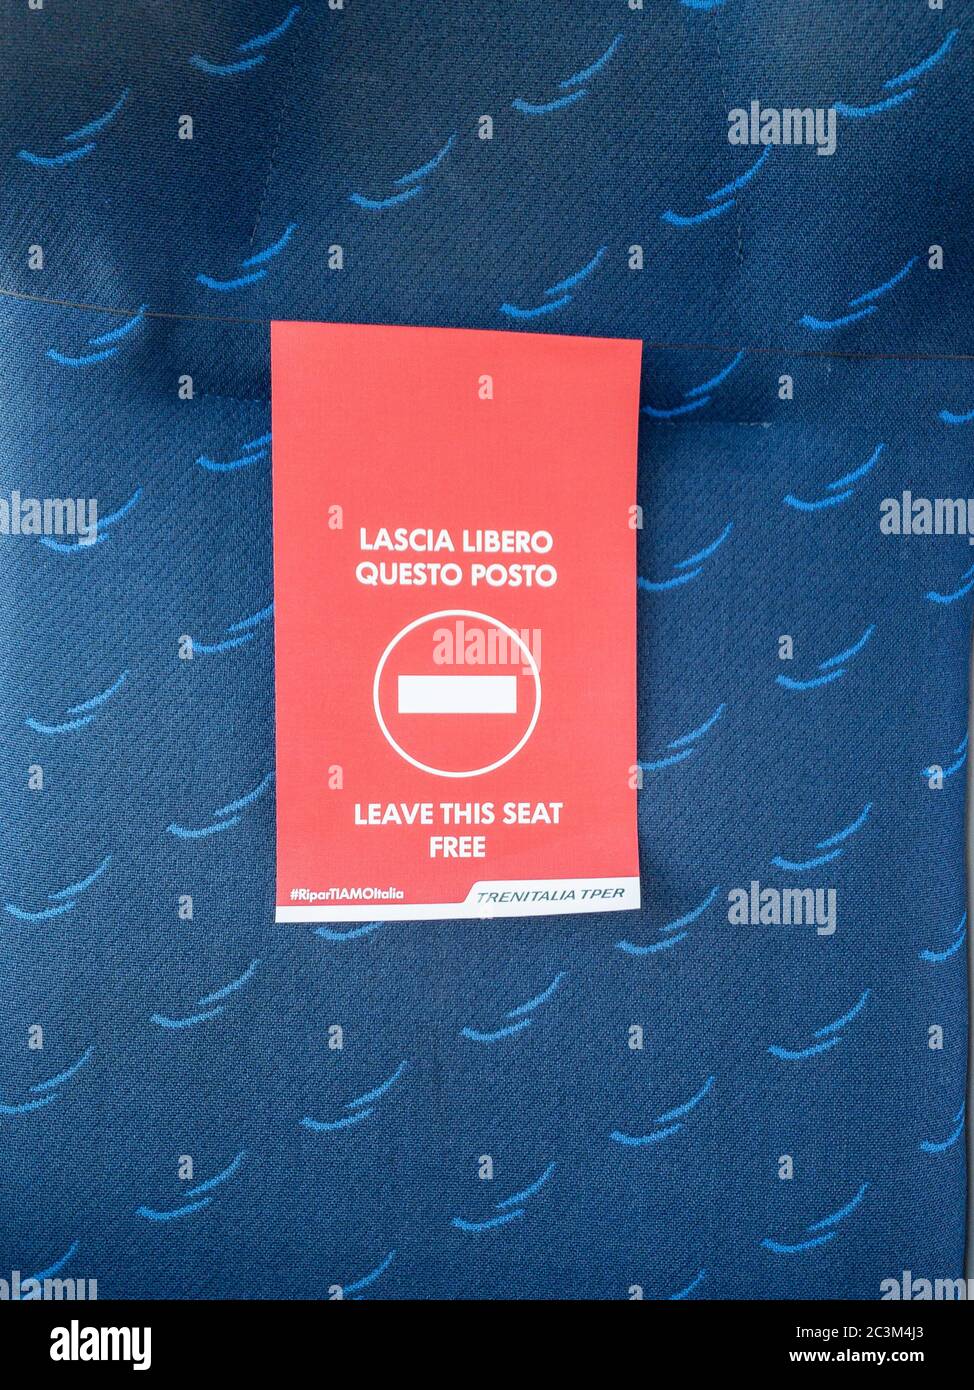 Mantova, Italien - 20. Juni 2020: Nahaufnahme des trenitalia-Zugsitzes mit einem roten Schild, das besagt, dass der Platz frei gelassen werden soll, neue Distanzierungsregeln aufgrund von Coronavir Stockfoto